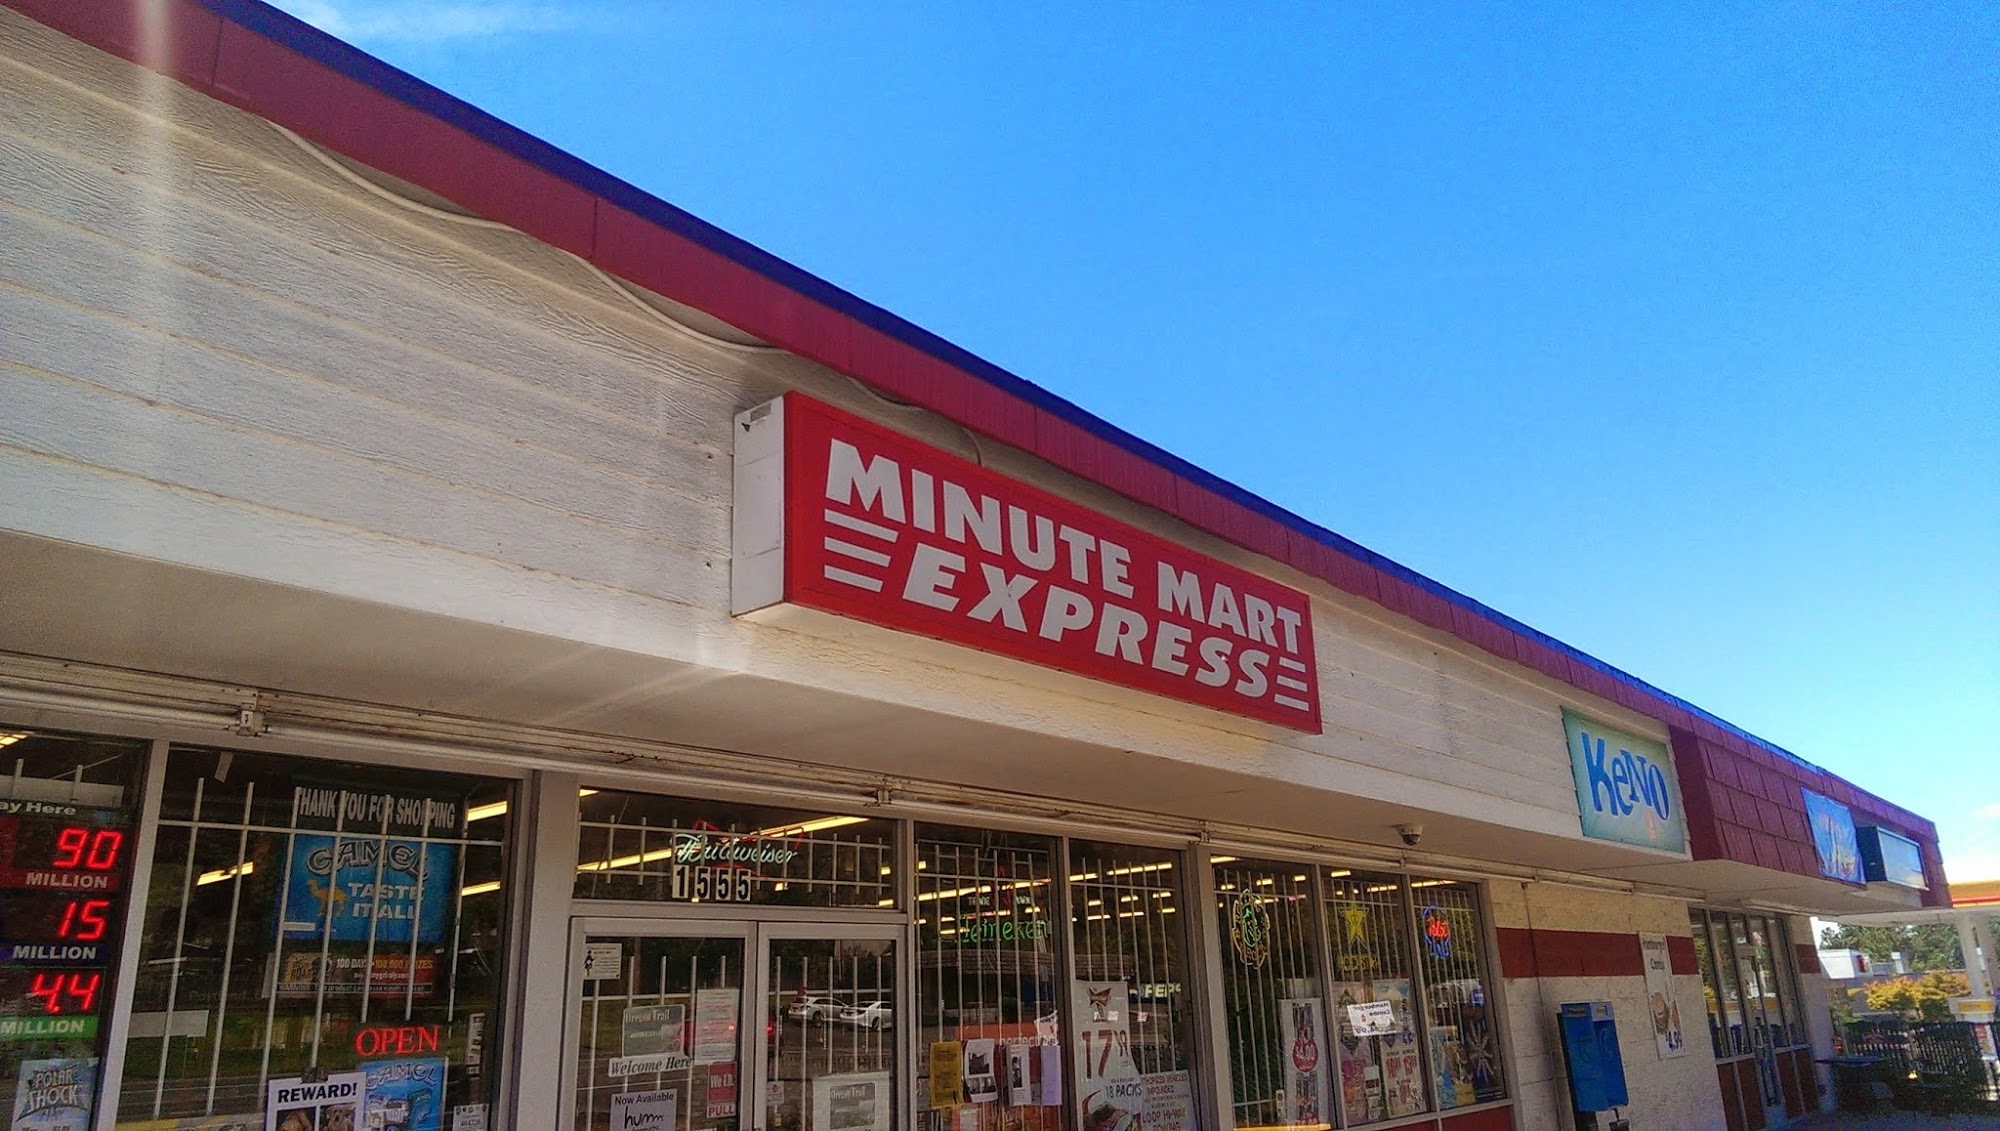 Minute Mart Express